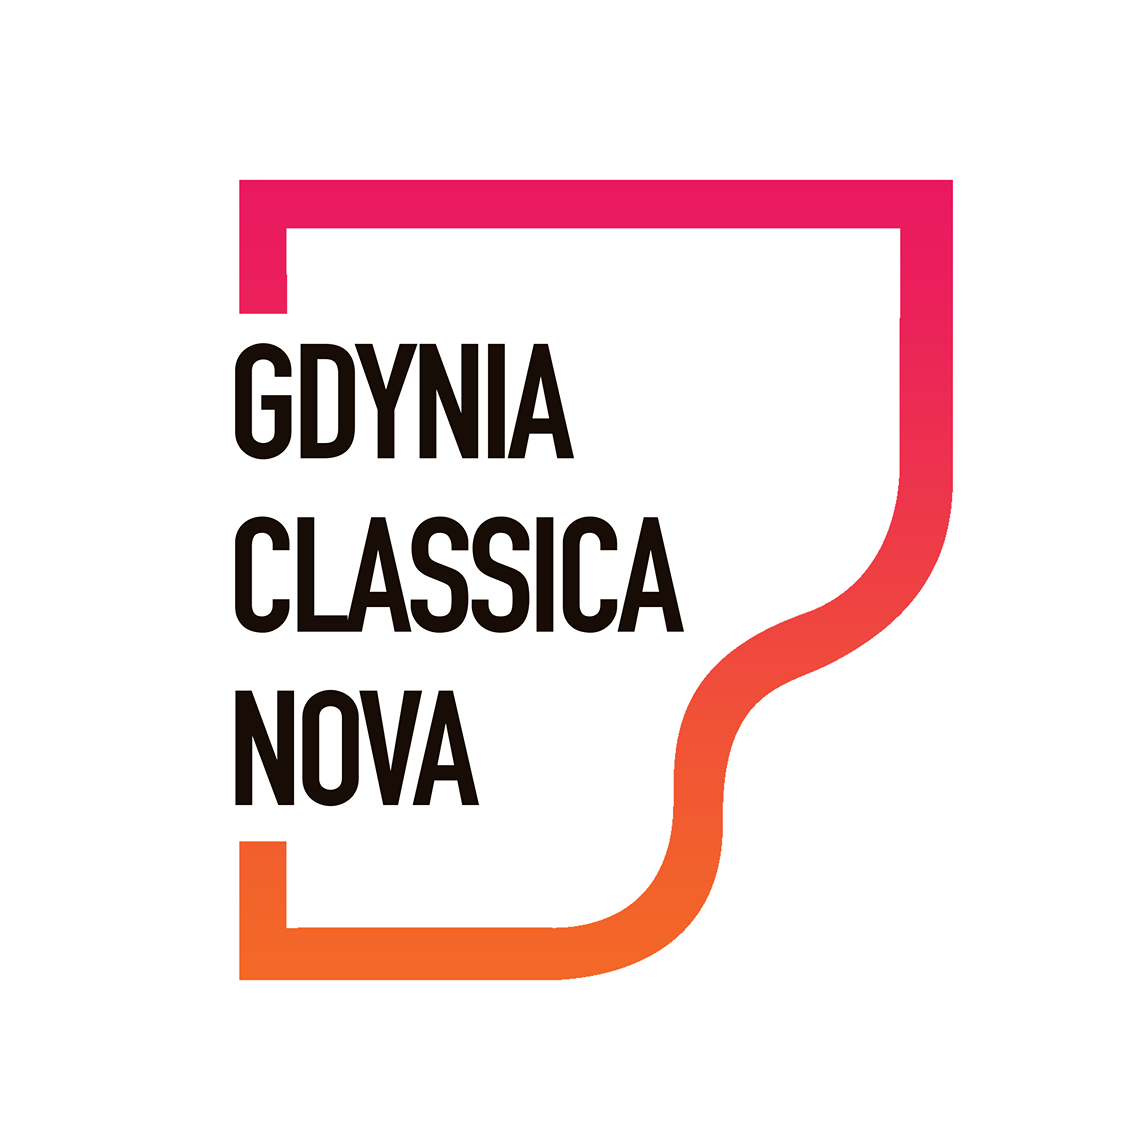 Gdynia Classica Nova